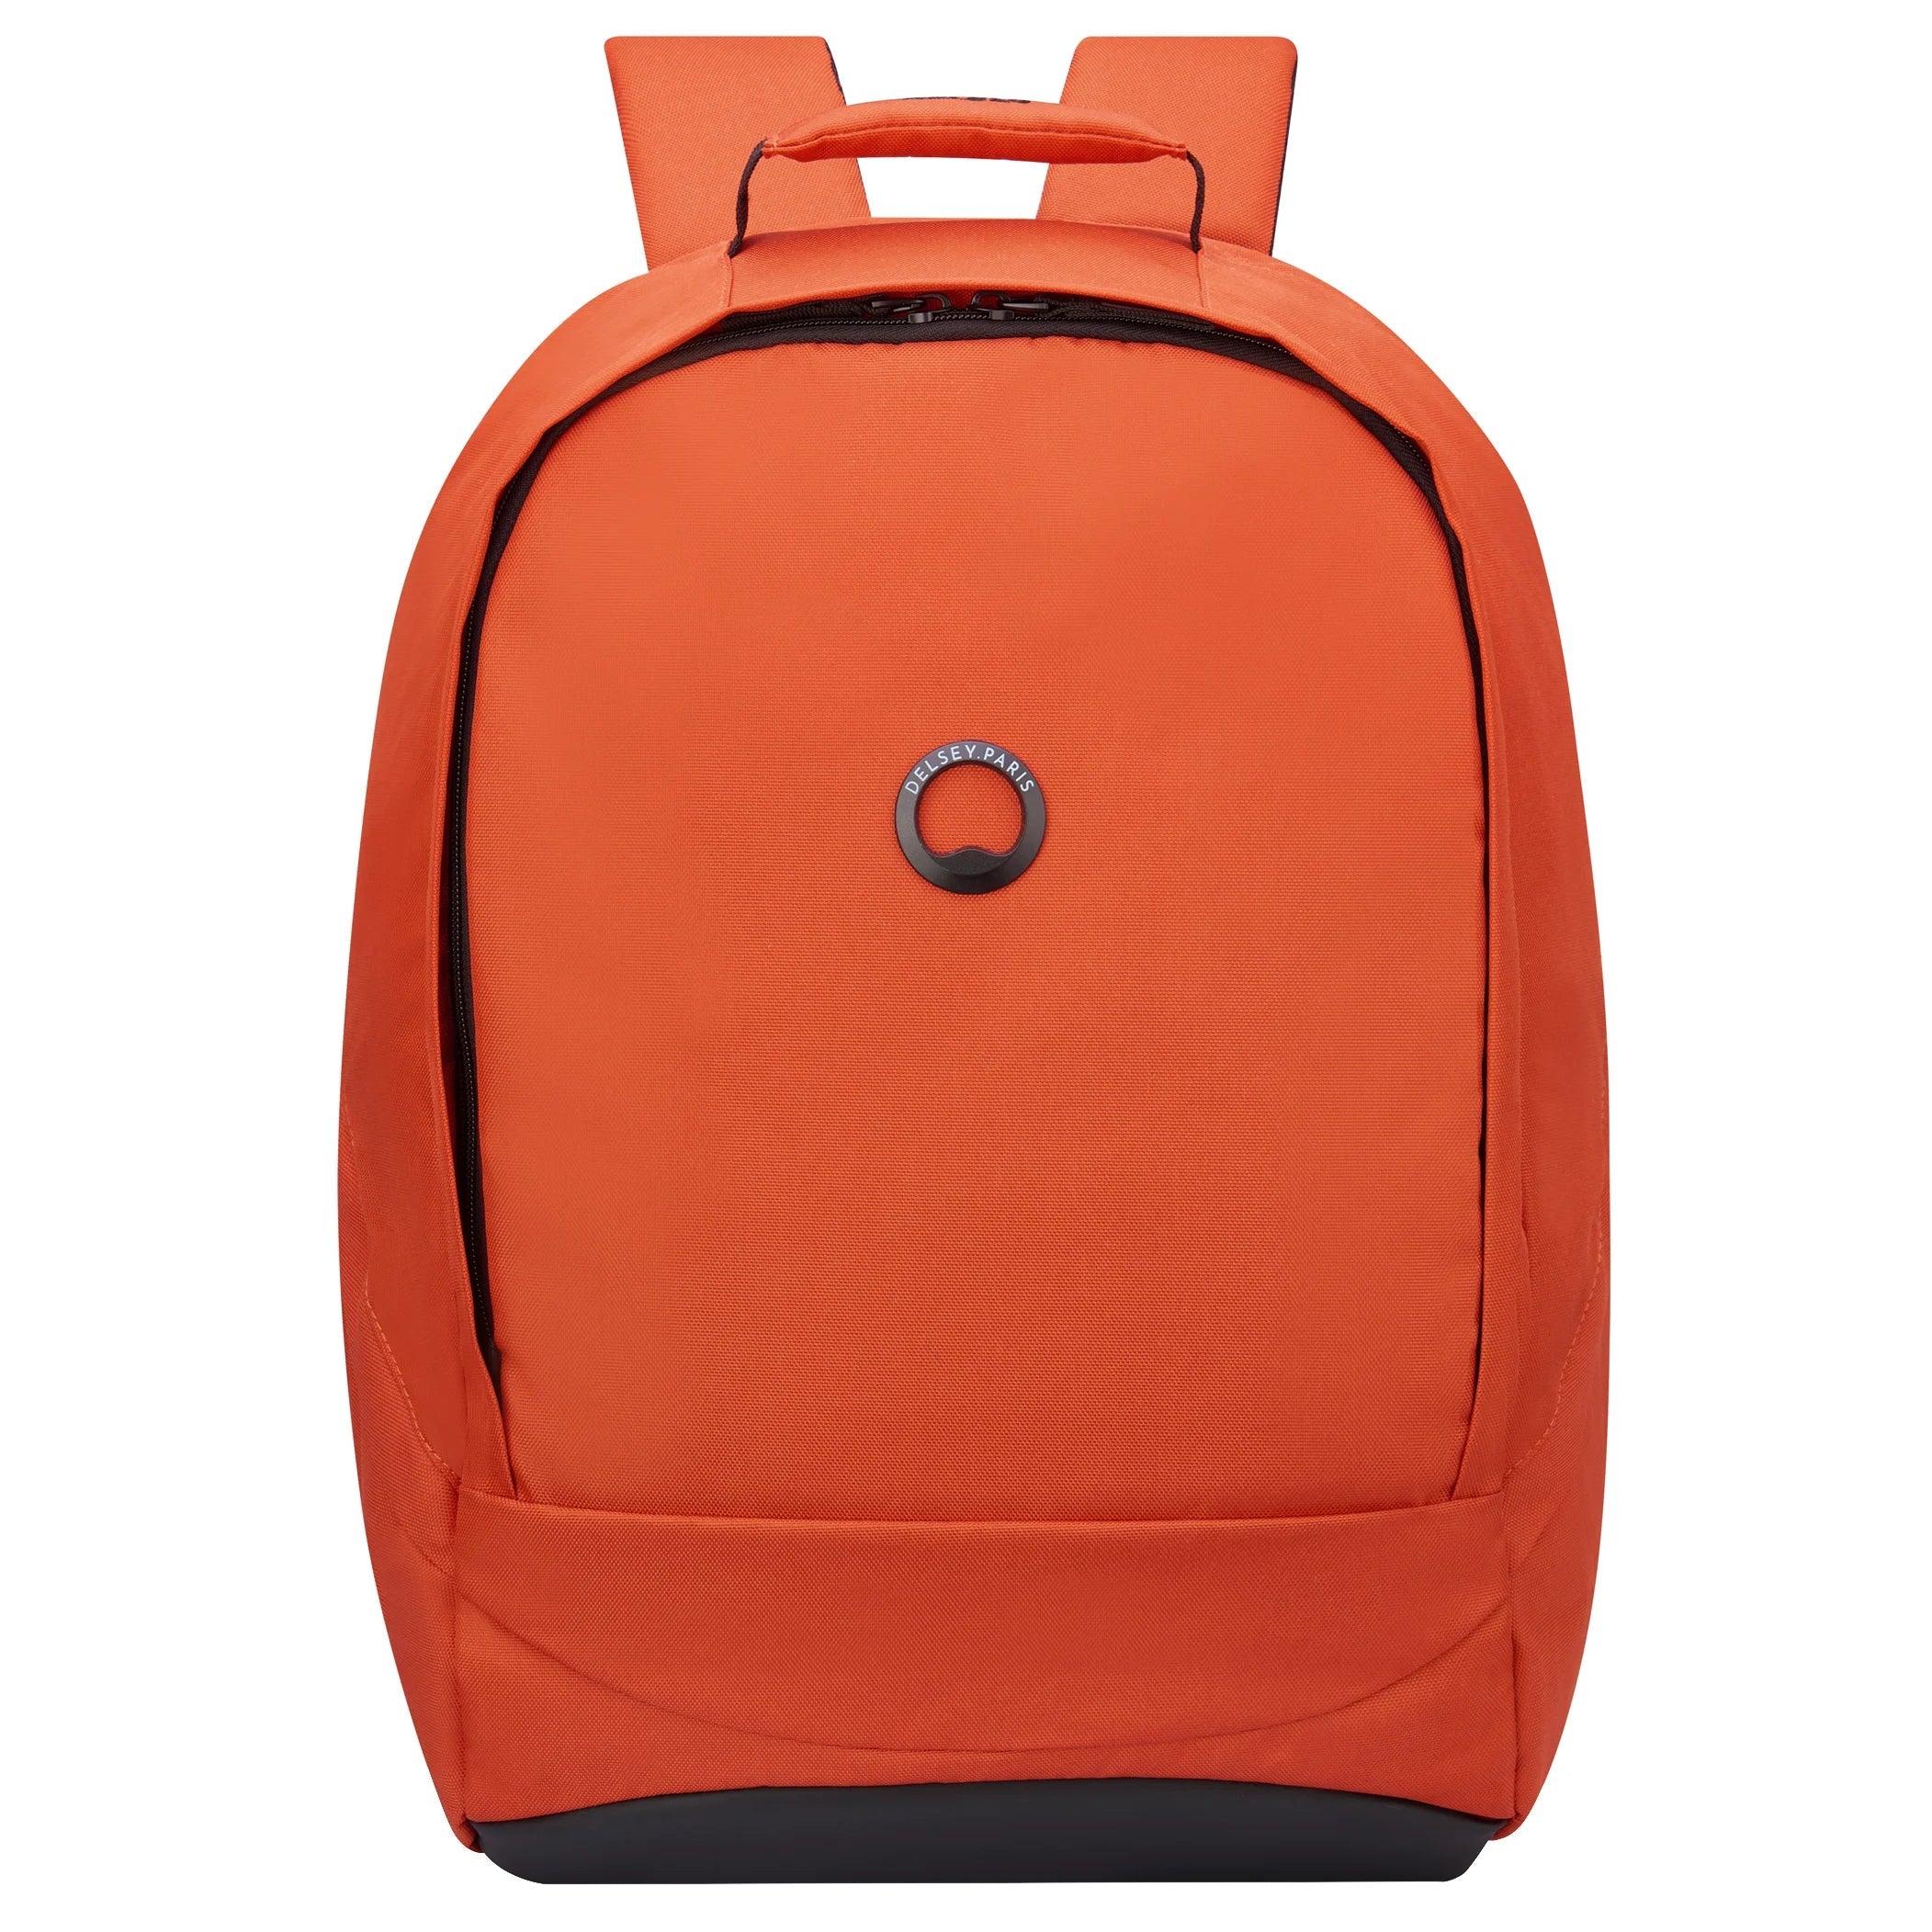 Delsey Securban laptop backpack 48 cm - Orange